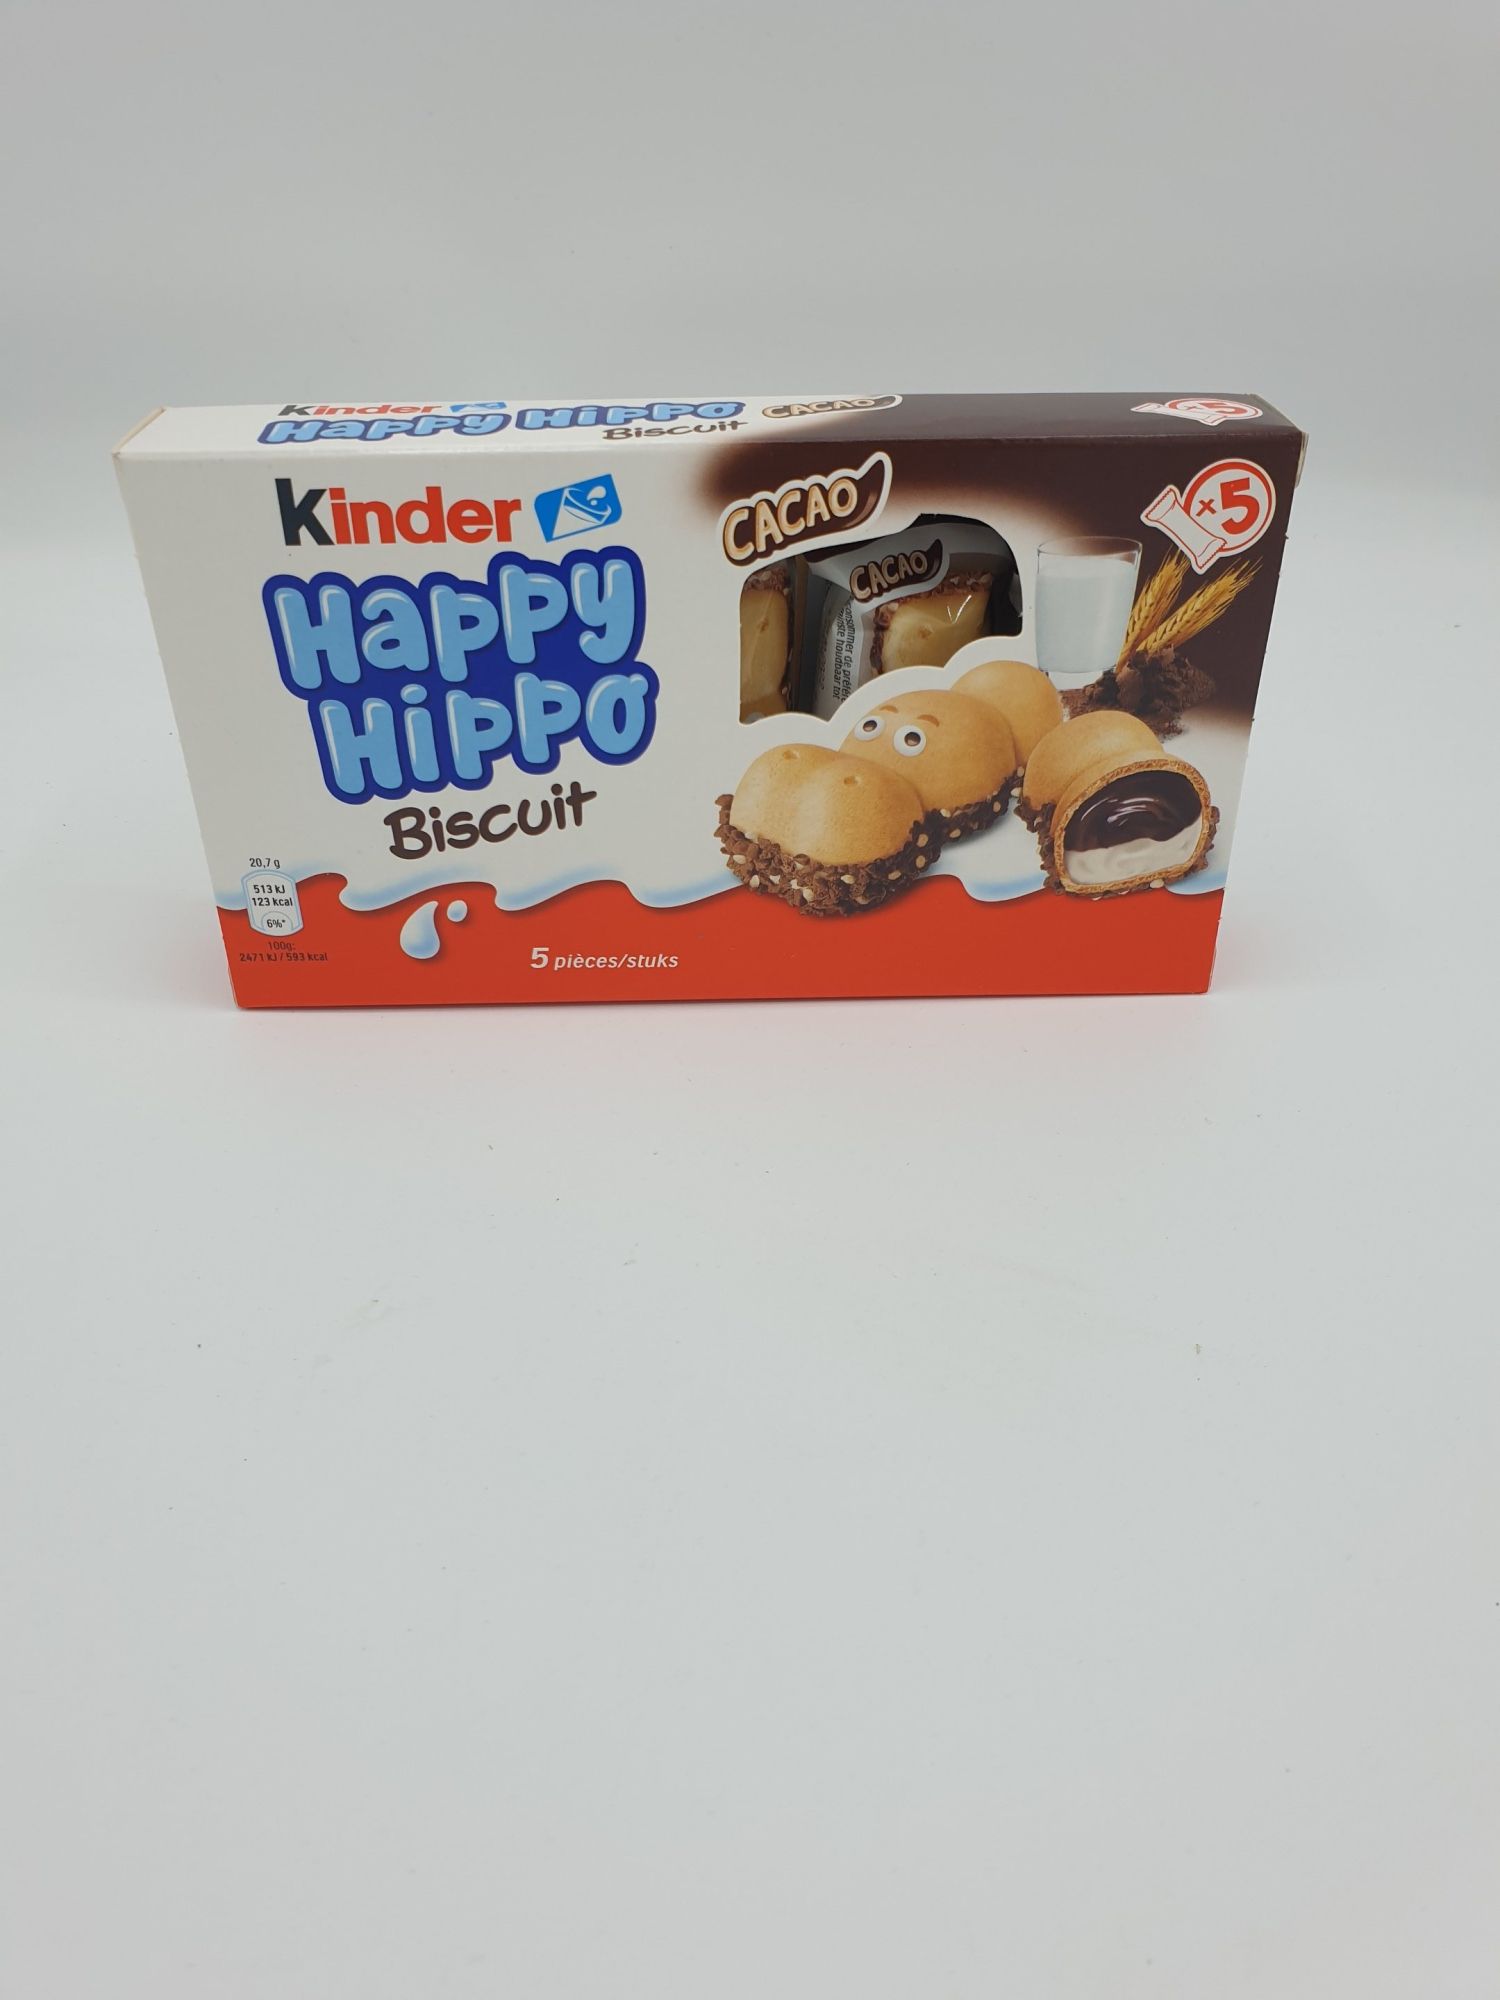 Happy Hippo Chocolat Kinder - Vente en ligne Meaux 77